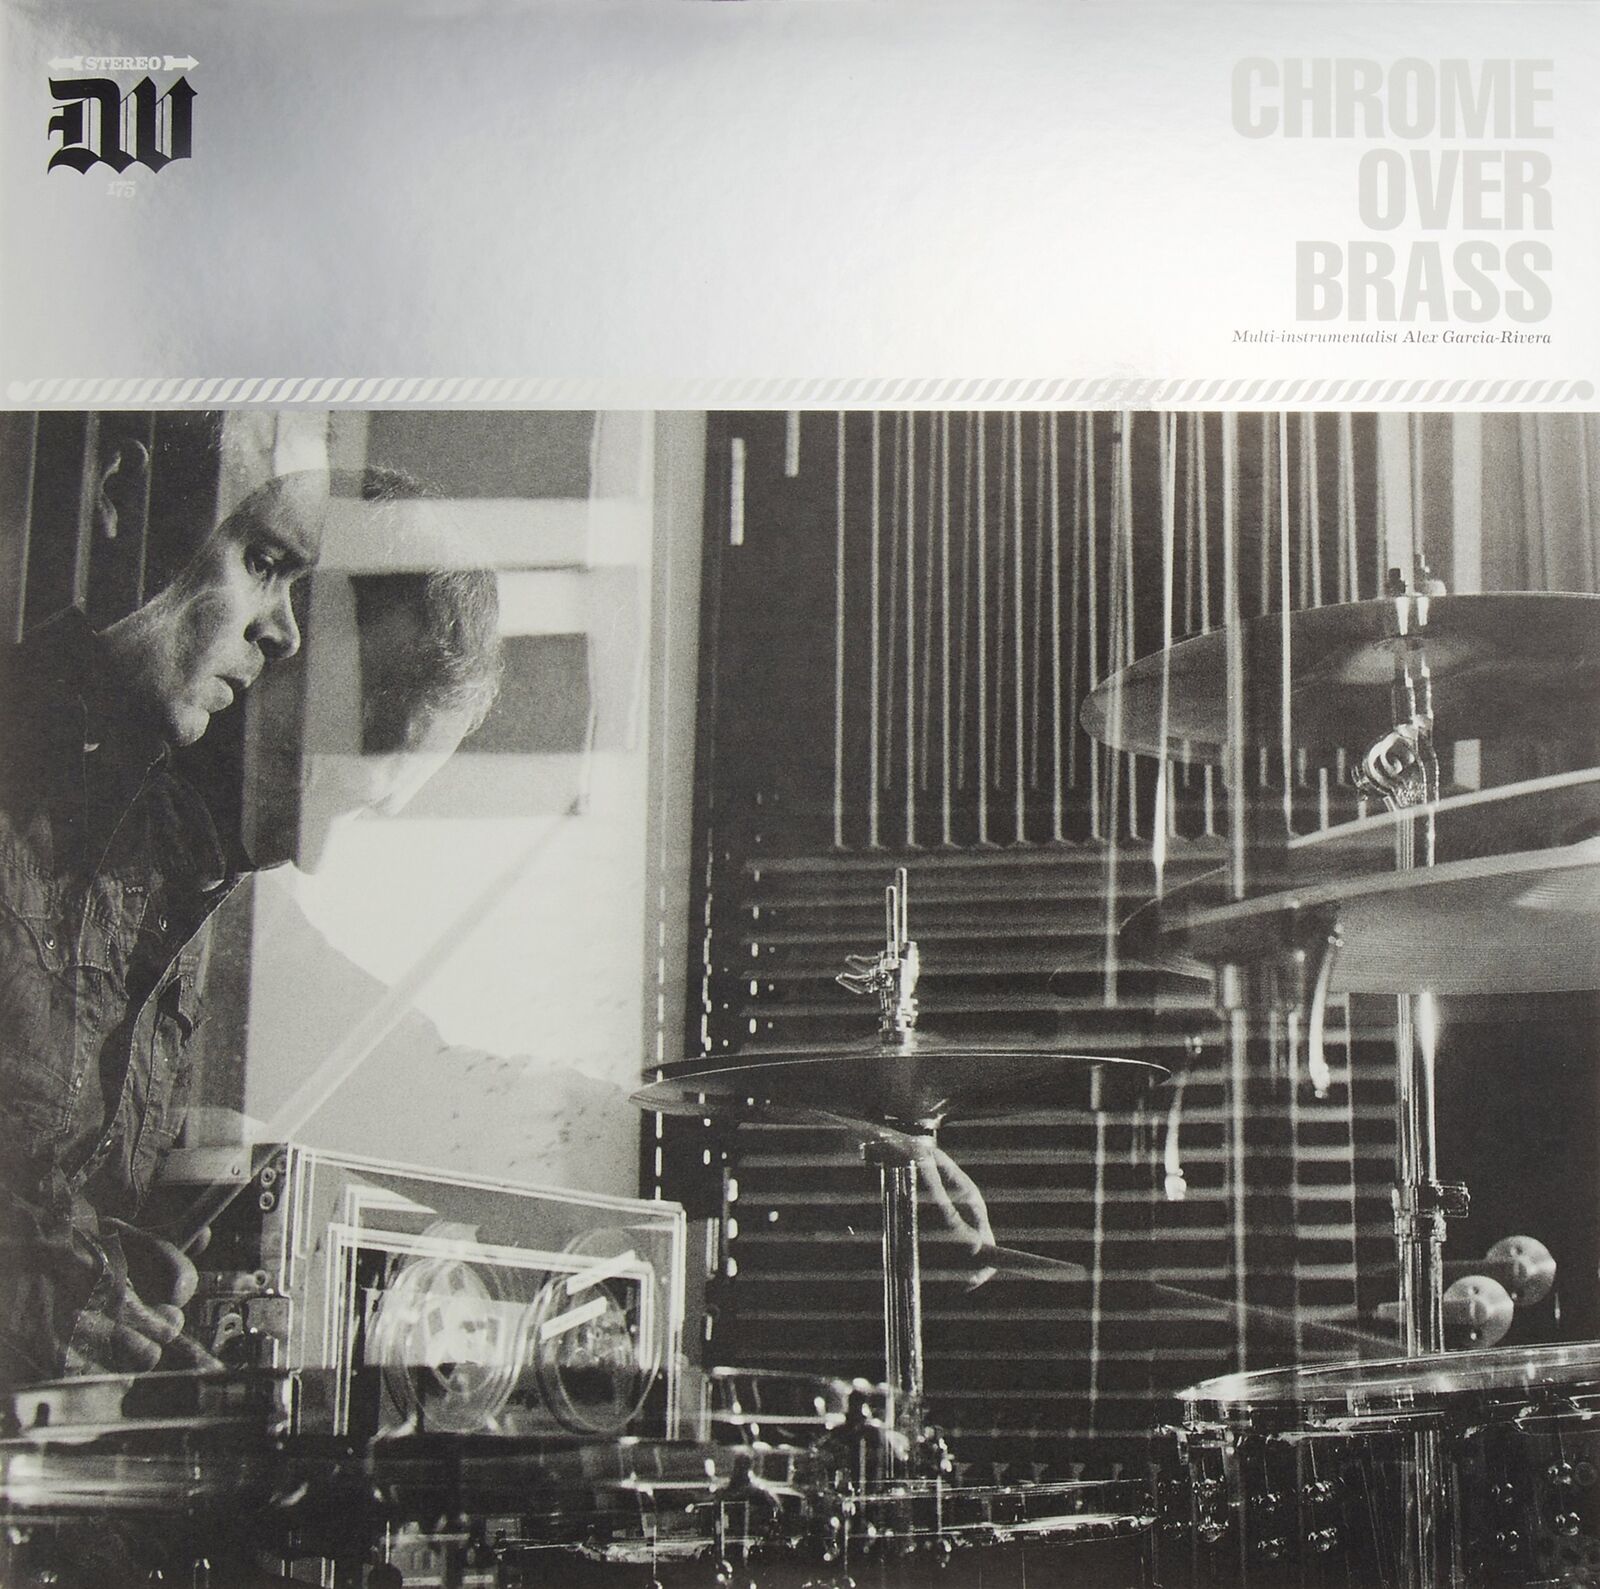 Chrome Over Brass Chrome Over Brass (Vinyl)